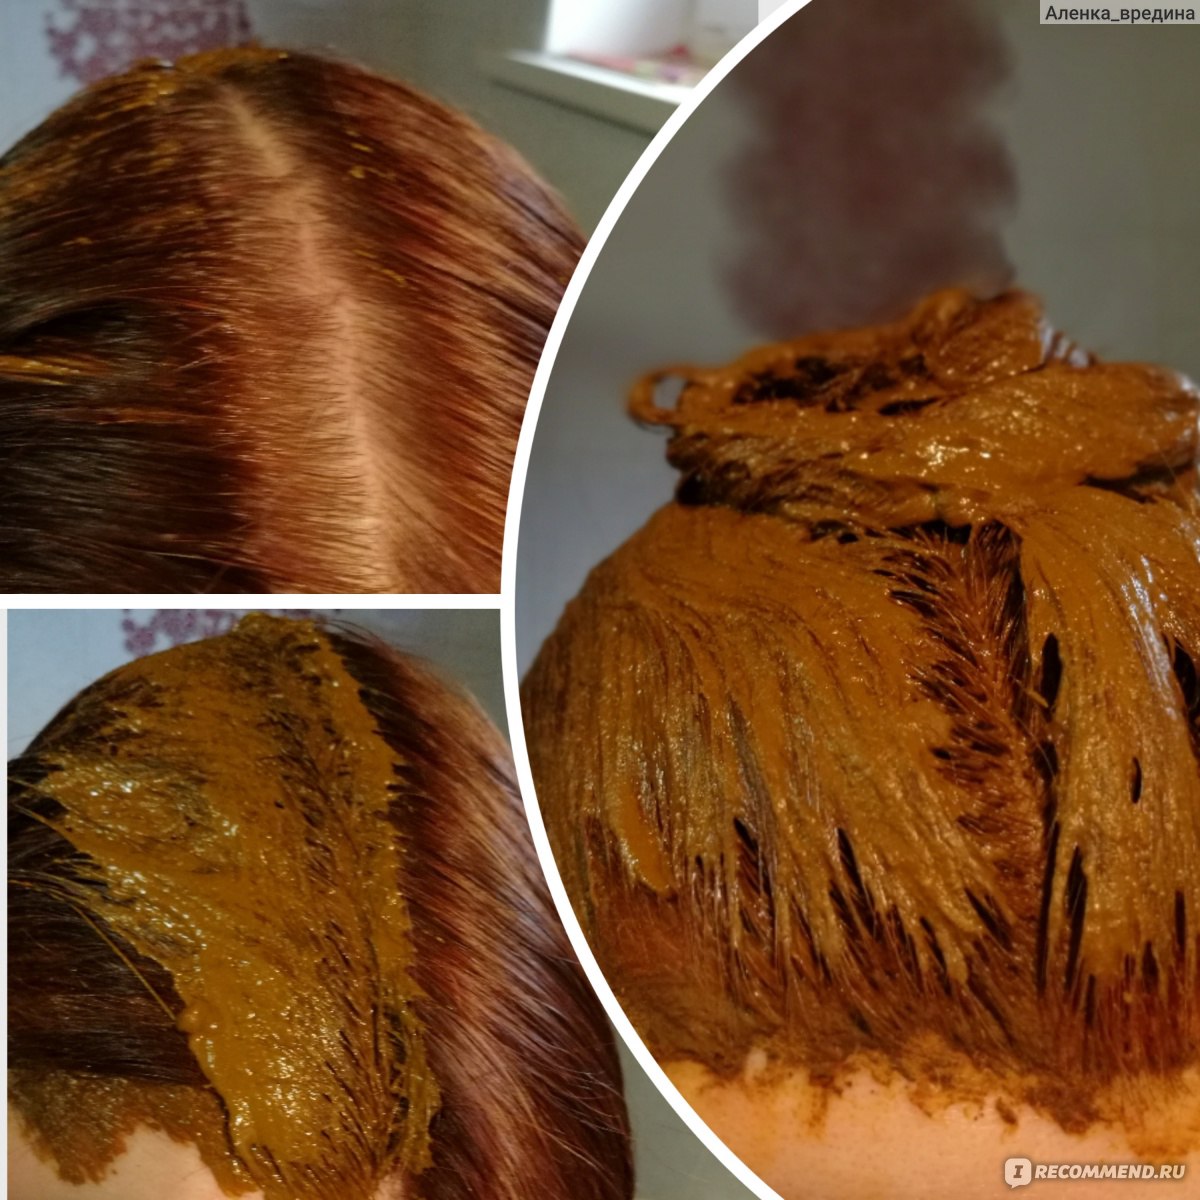 Натуральная хна: чем она отличается от обычной краски и как выглядят волосы на фото после применения?